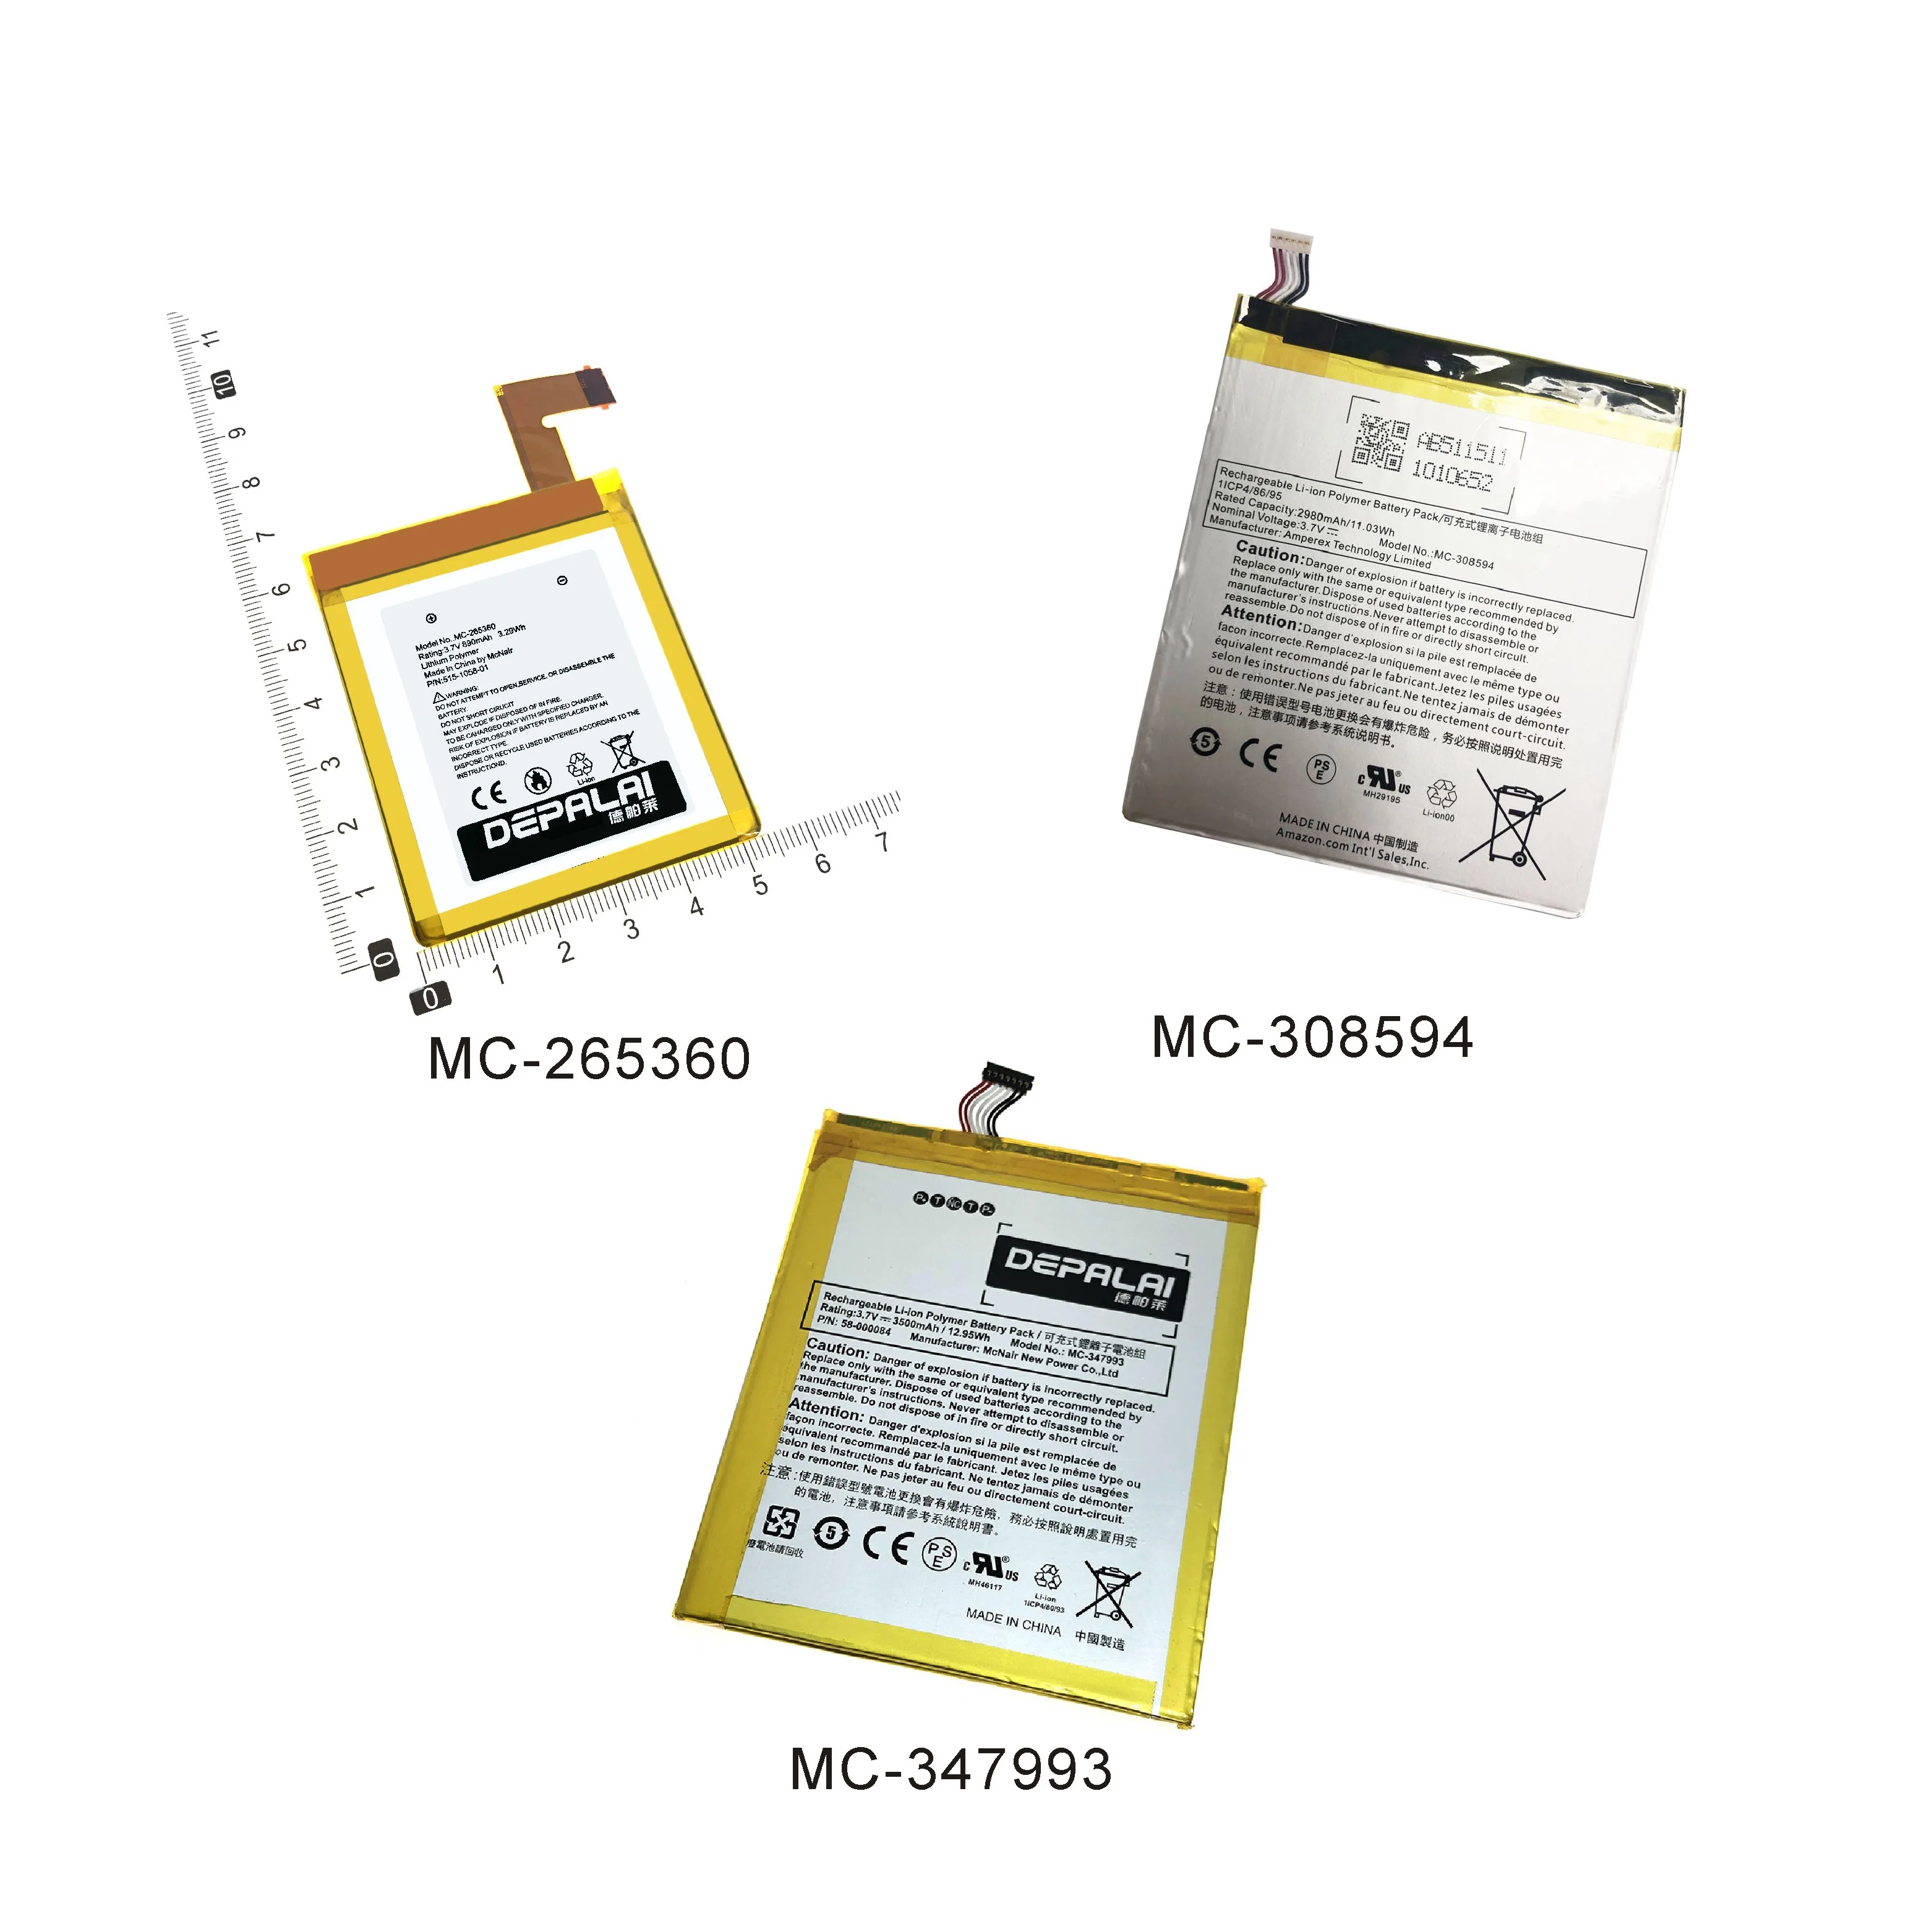 MC-265360 MC-347993 MC-308594 de la Batería Para el Kindle de Amazon 4 5 6 D01100 515-1058-01 S2011-001-S DR-A015 Fire HD 7 SQ46CW 5 de SV98LN 4